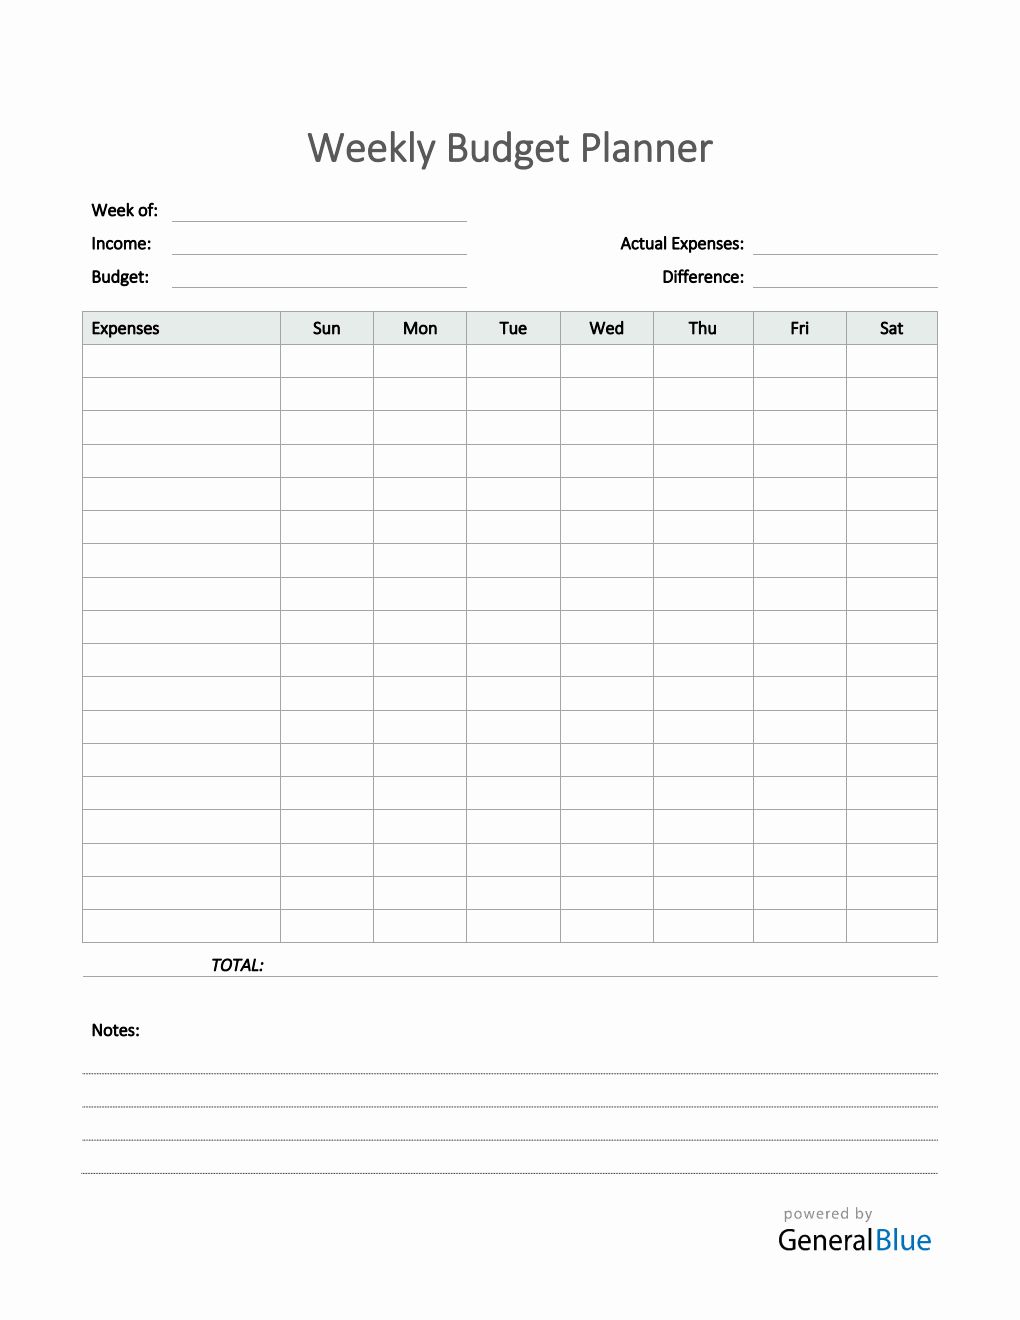 Weekly Budget Planner in PDF (Simple)